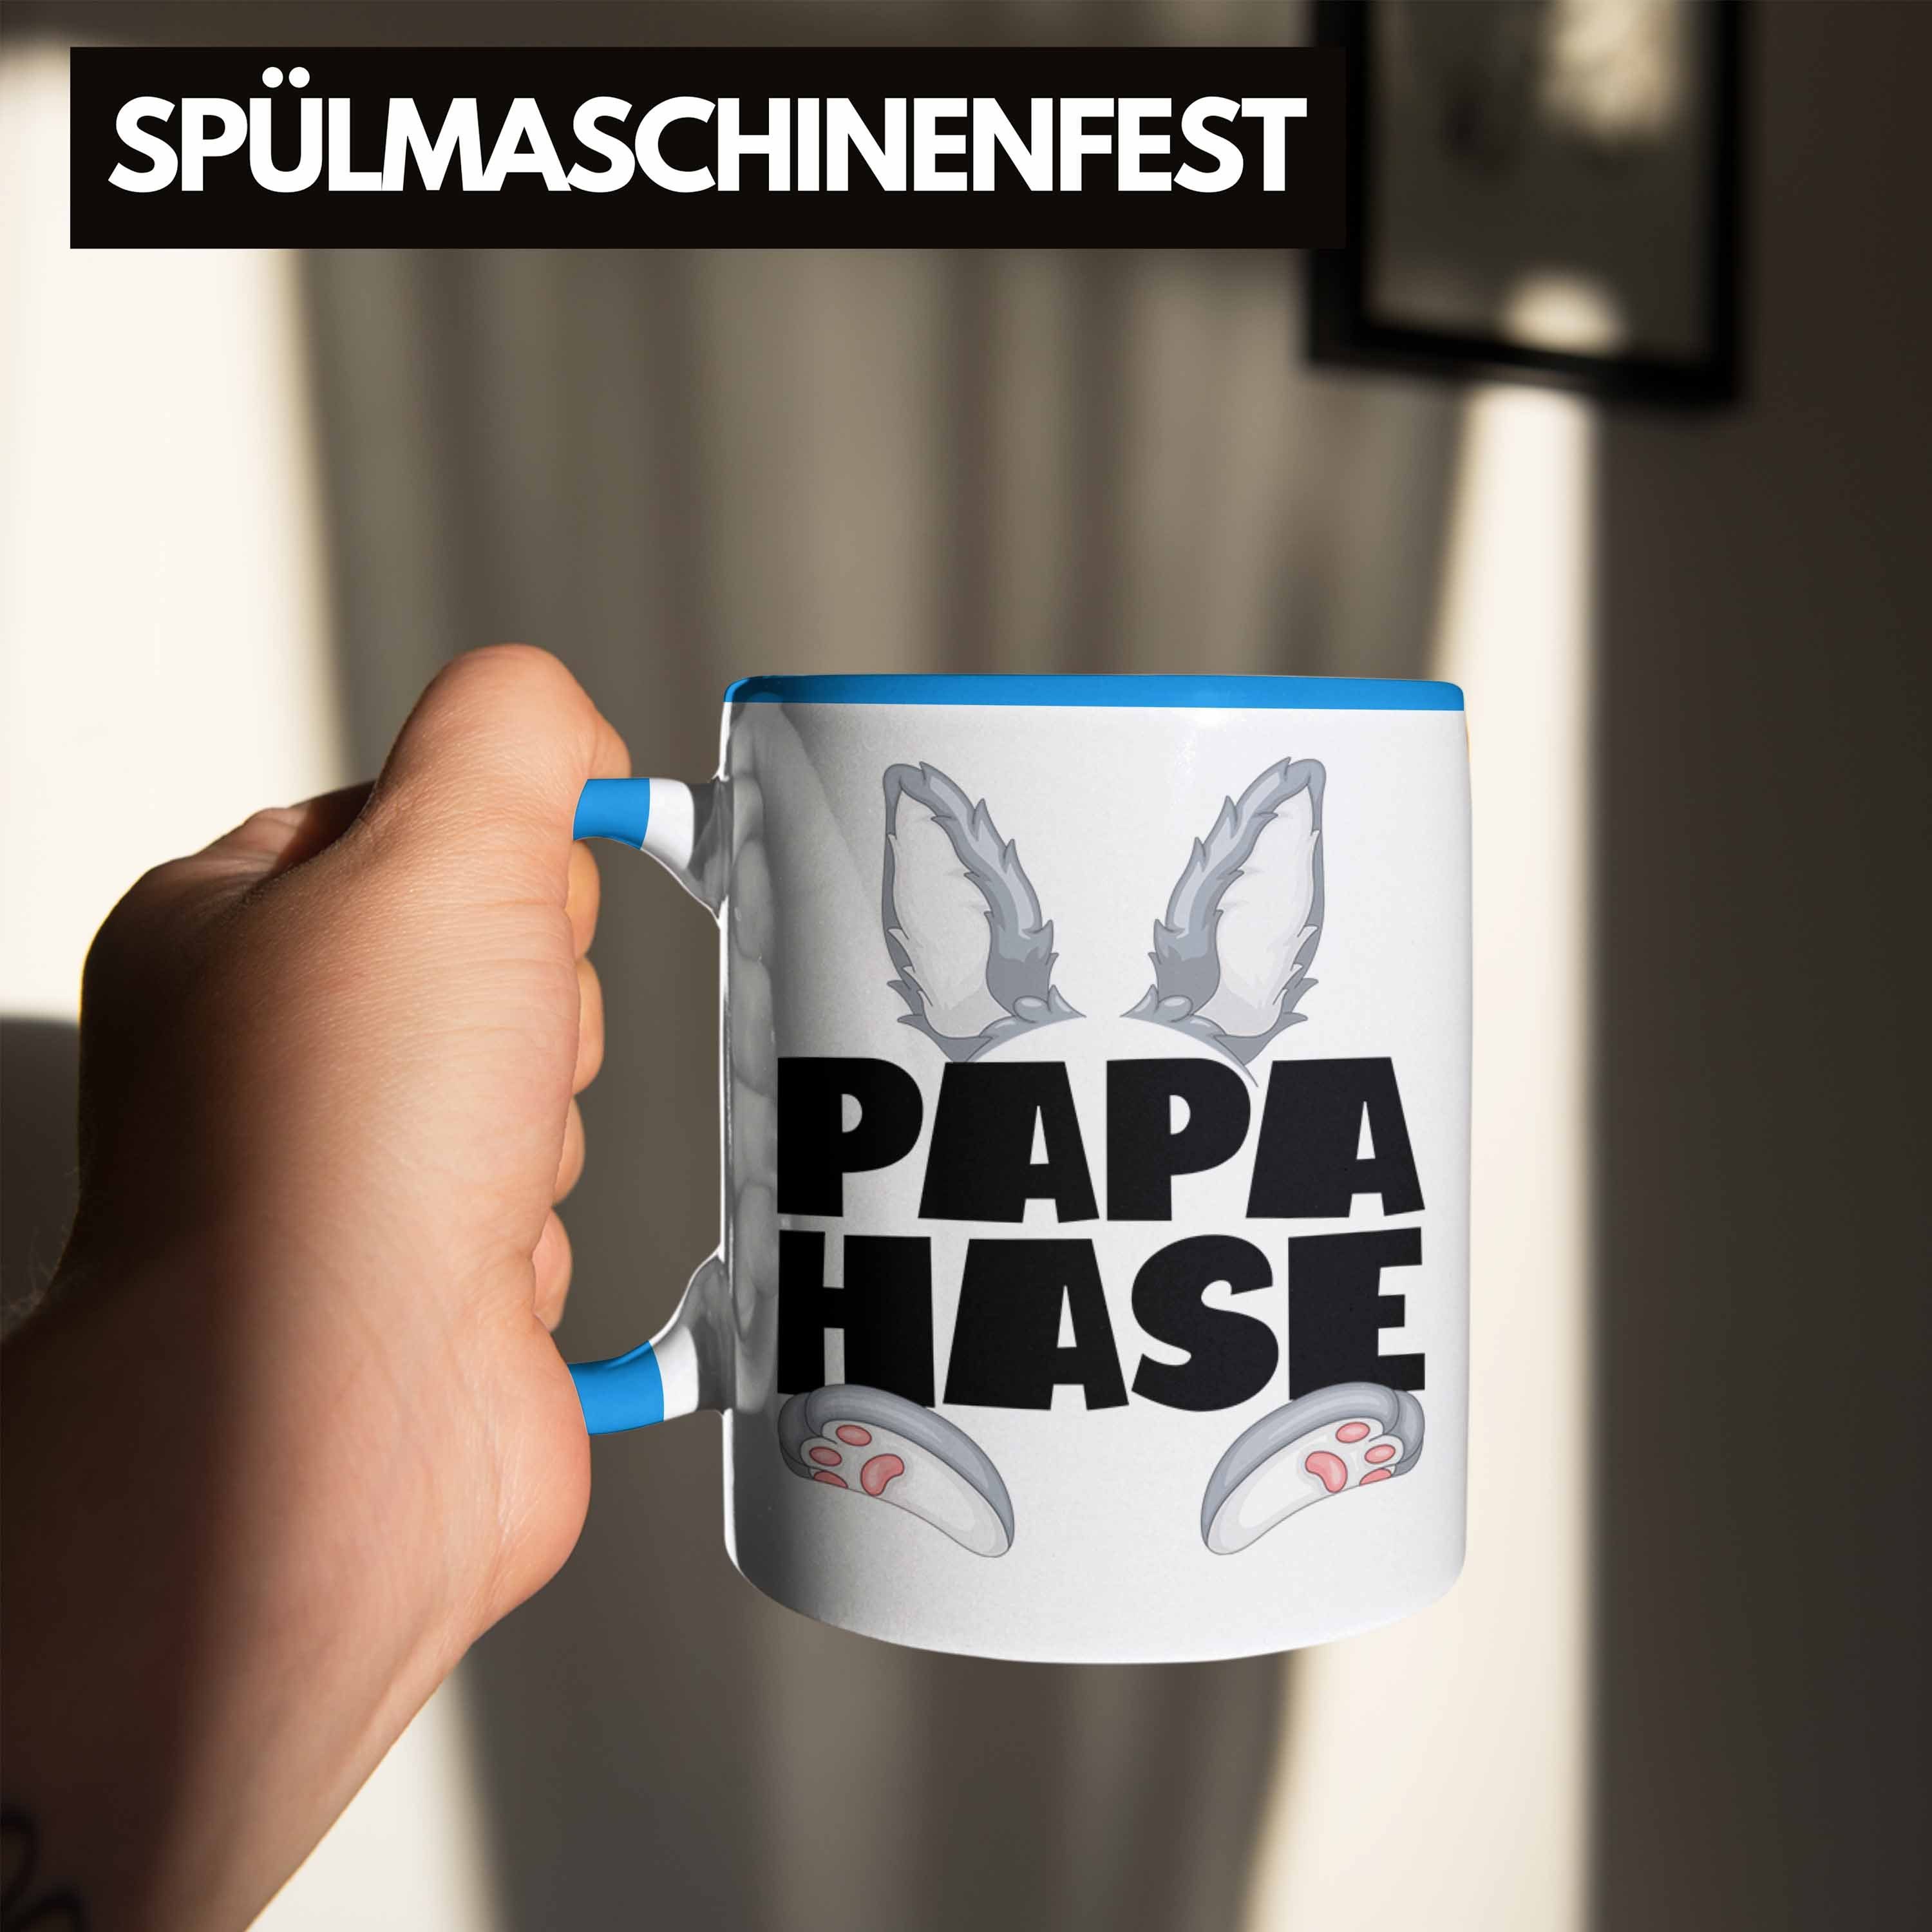 Trendation Tasse Papa Geschenk Tasse Kaffee-Becher Blau Geschenkidee für Hasen-Vater Hase Be